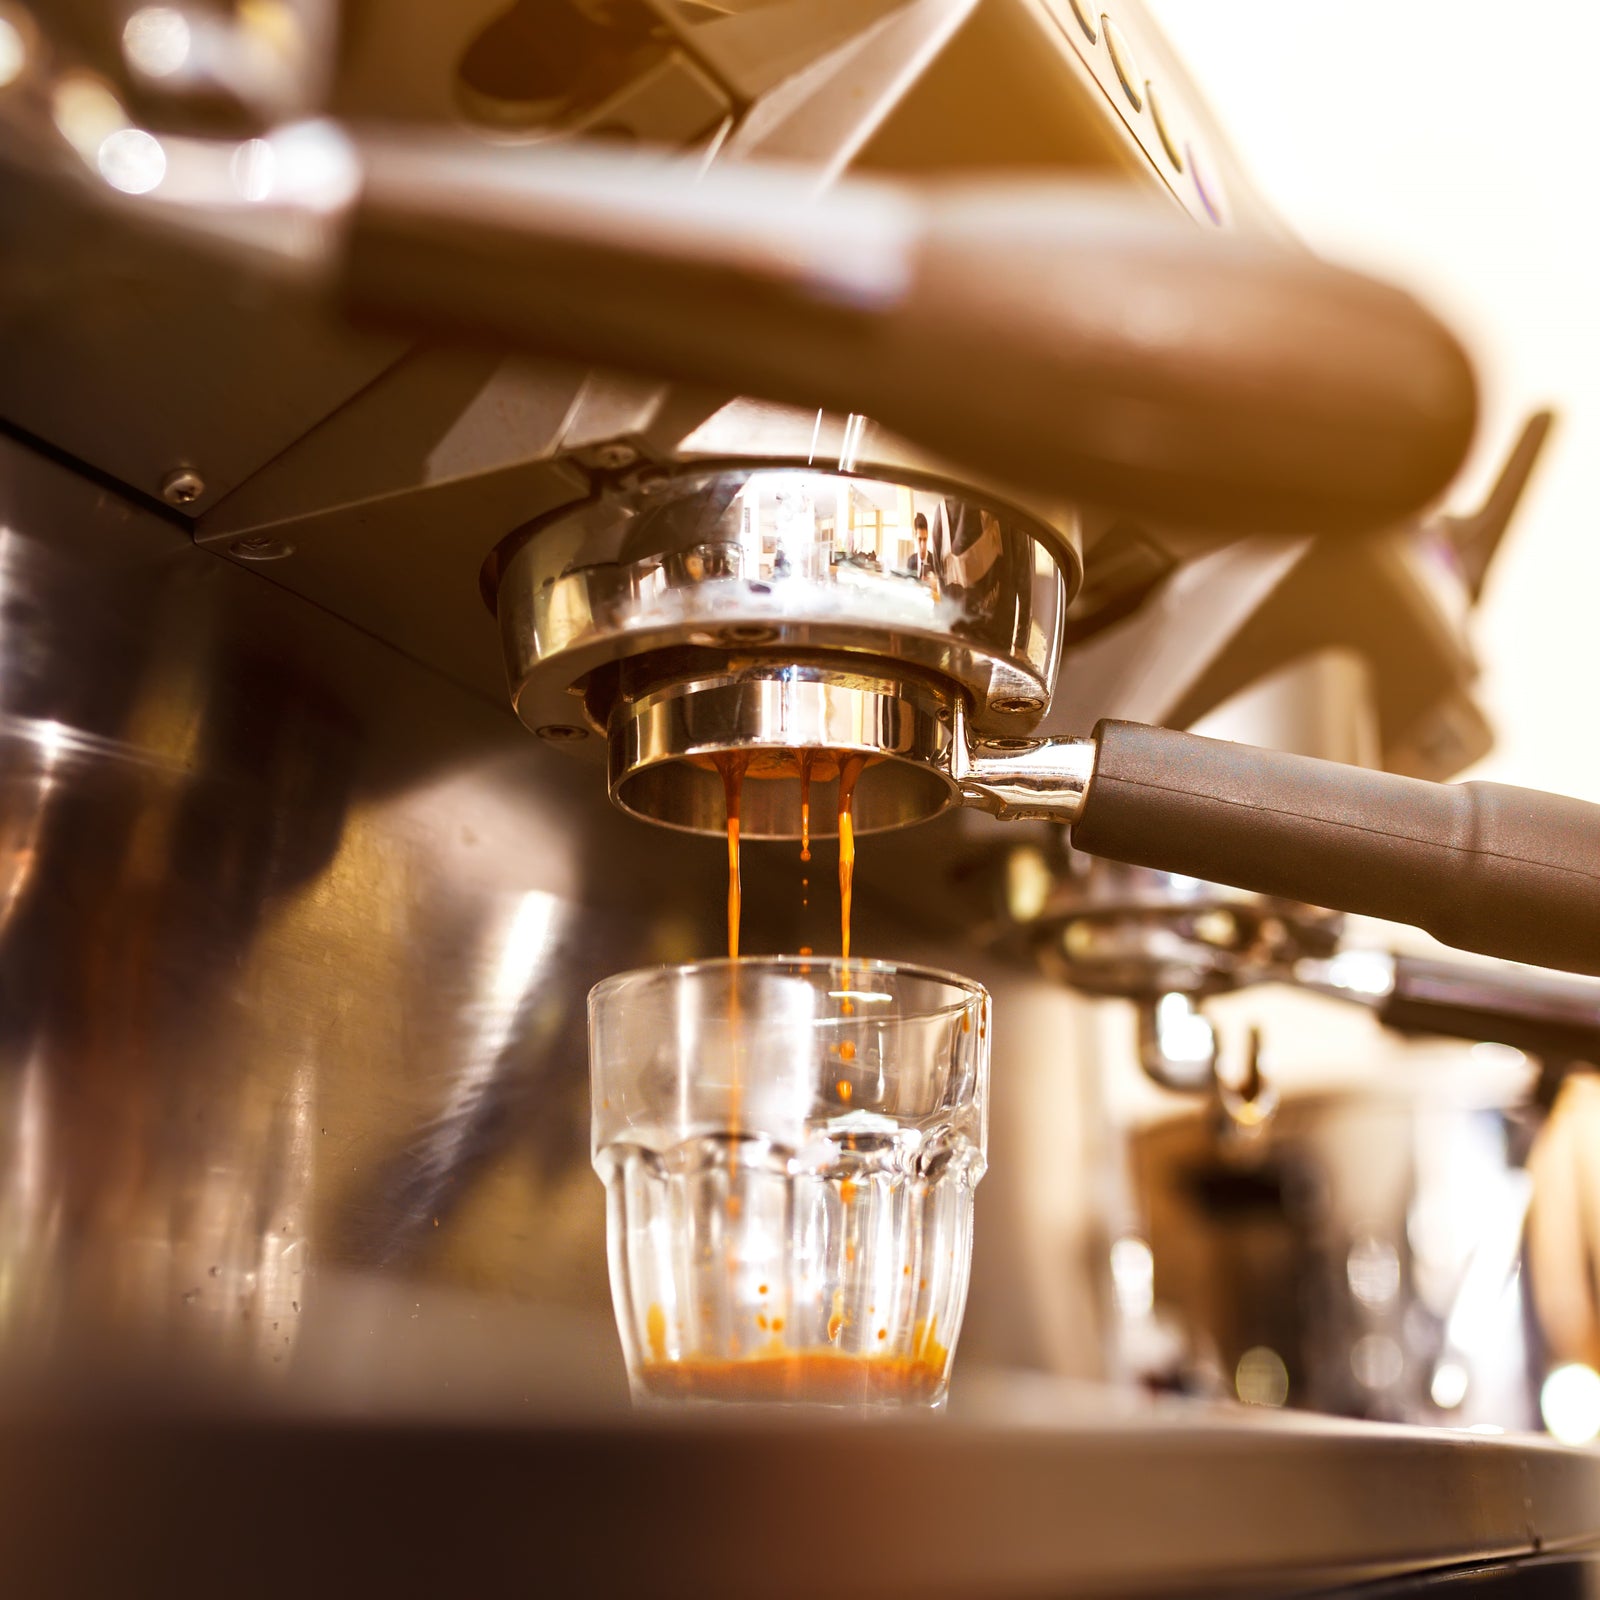 How to Make Espresso Without a Machine 3 Ways